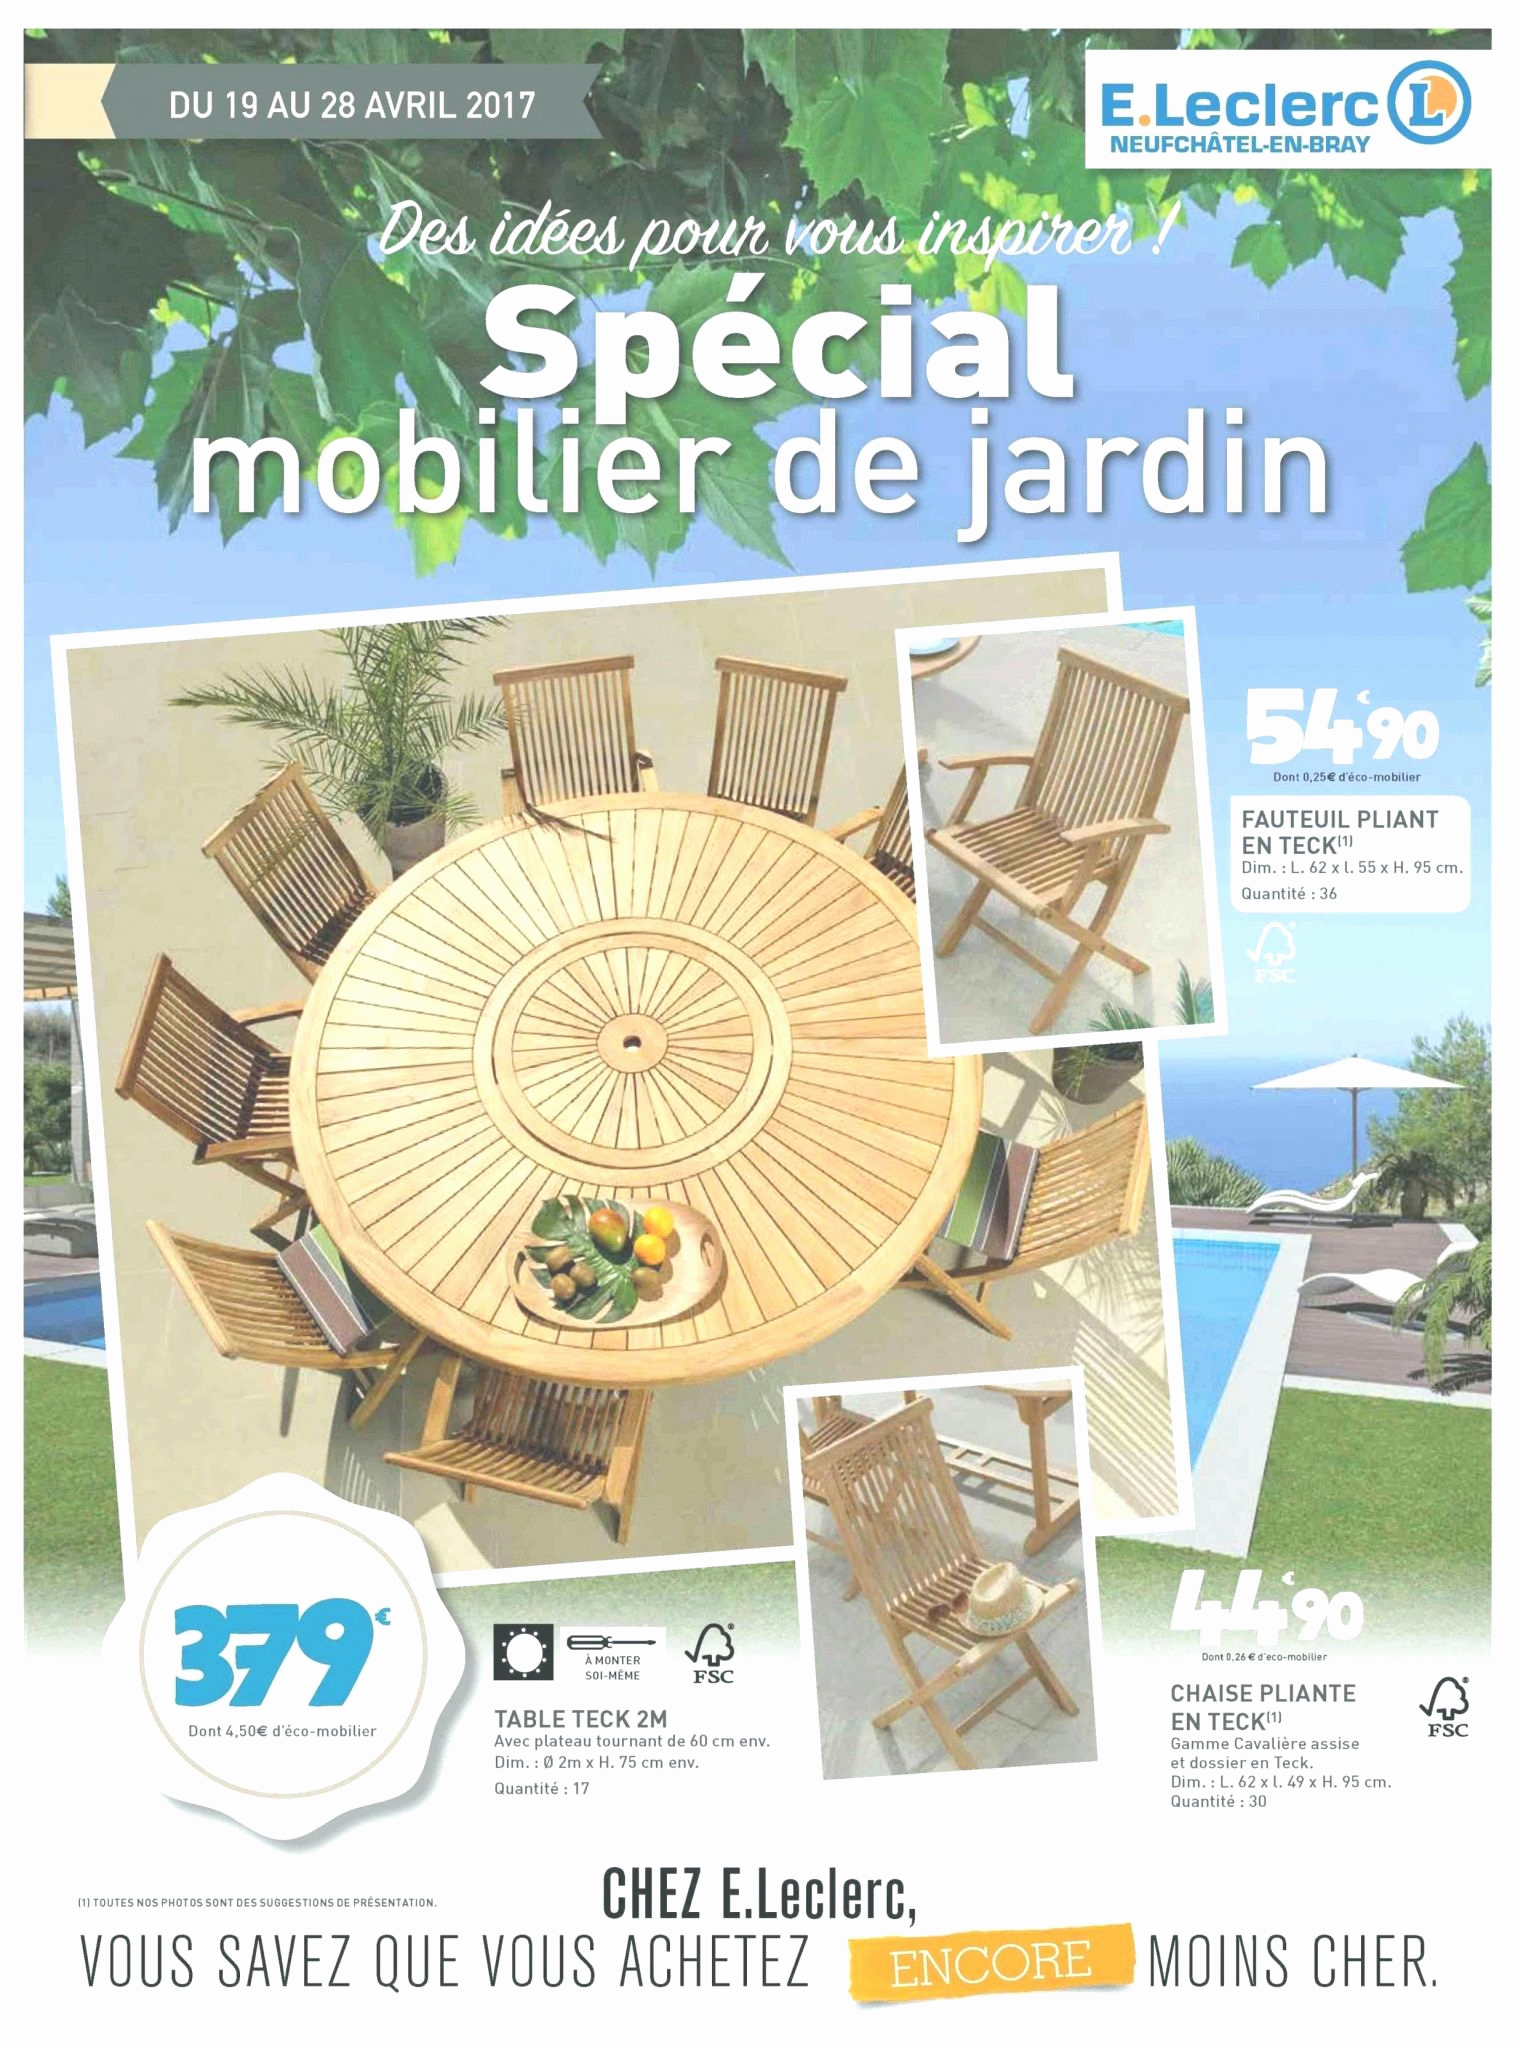 Salon De Jardin Bas Leclerc Génial Salon De Jardin Leclerc Catalogue 2017 Le Meilleur De Table